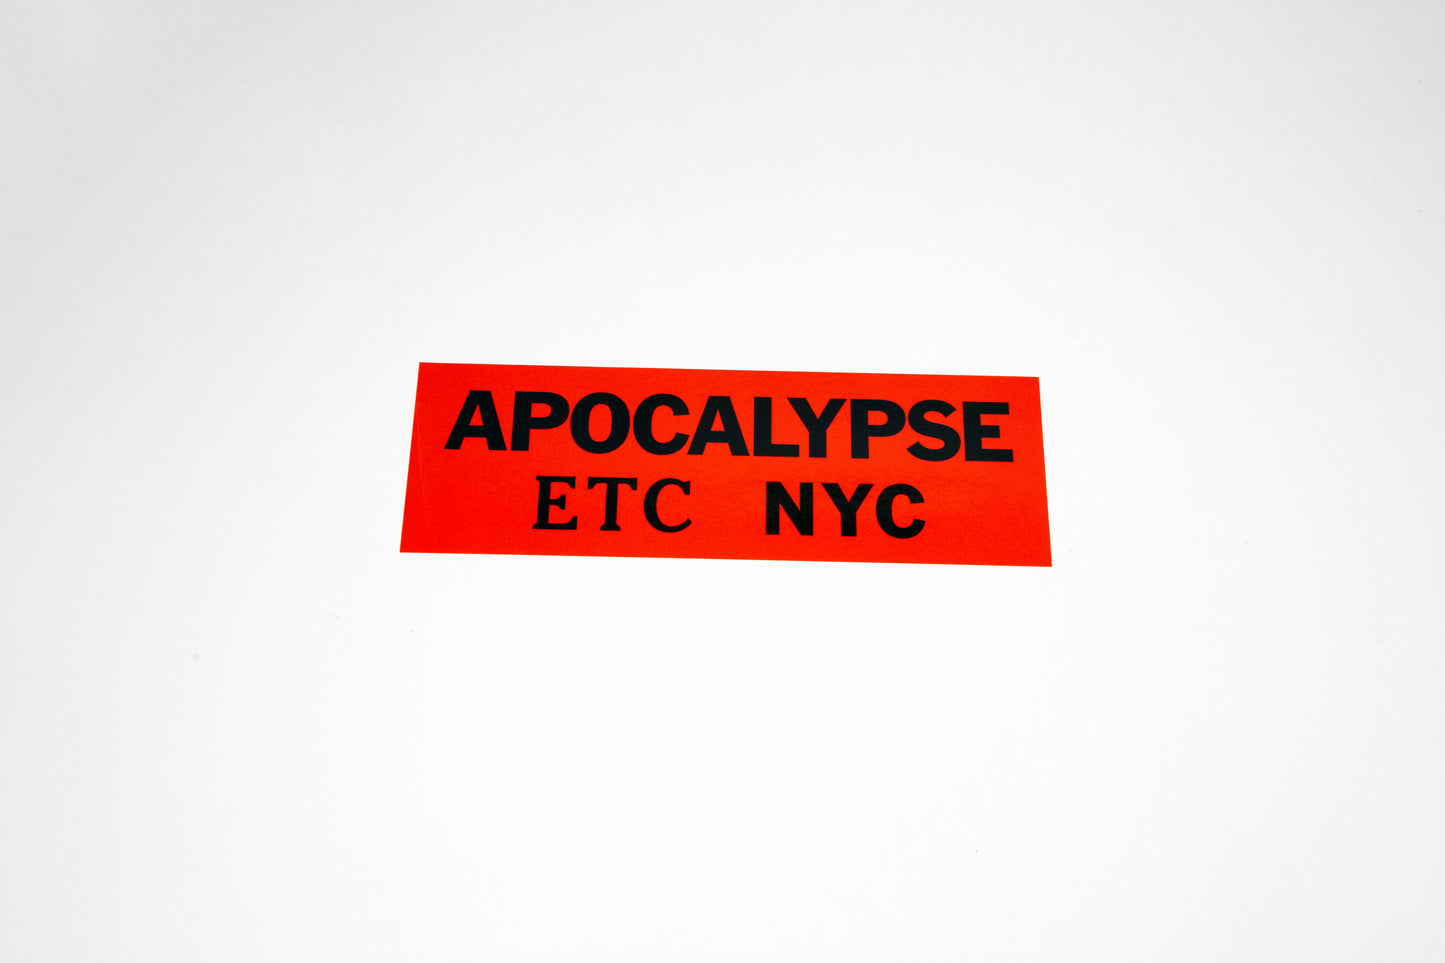 APOCALYPSE ETC NYC Sticker